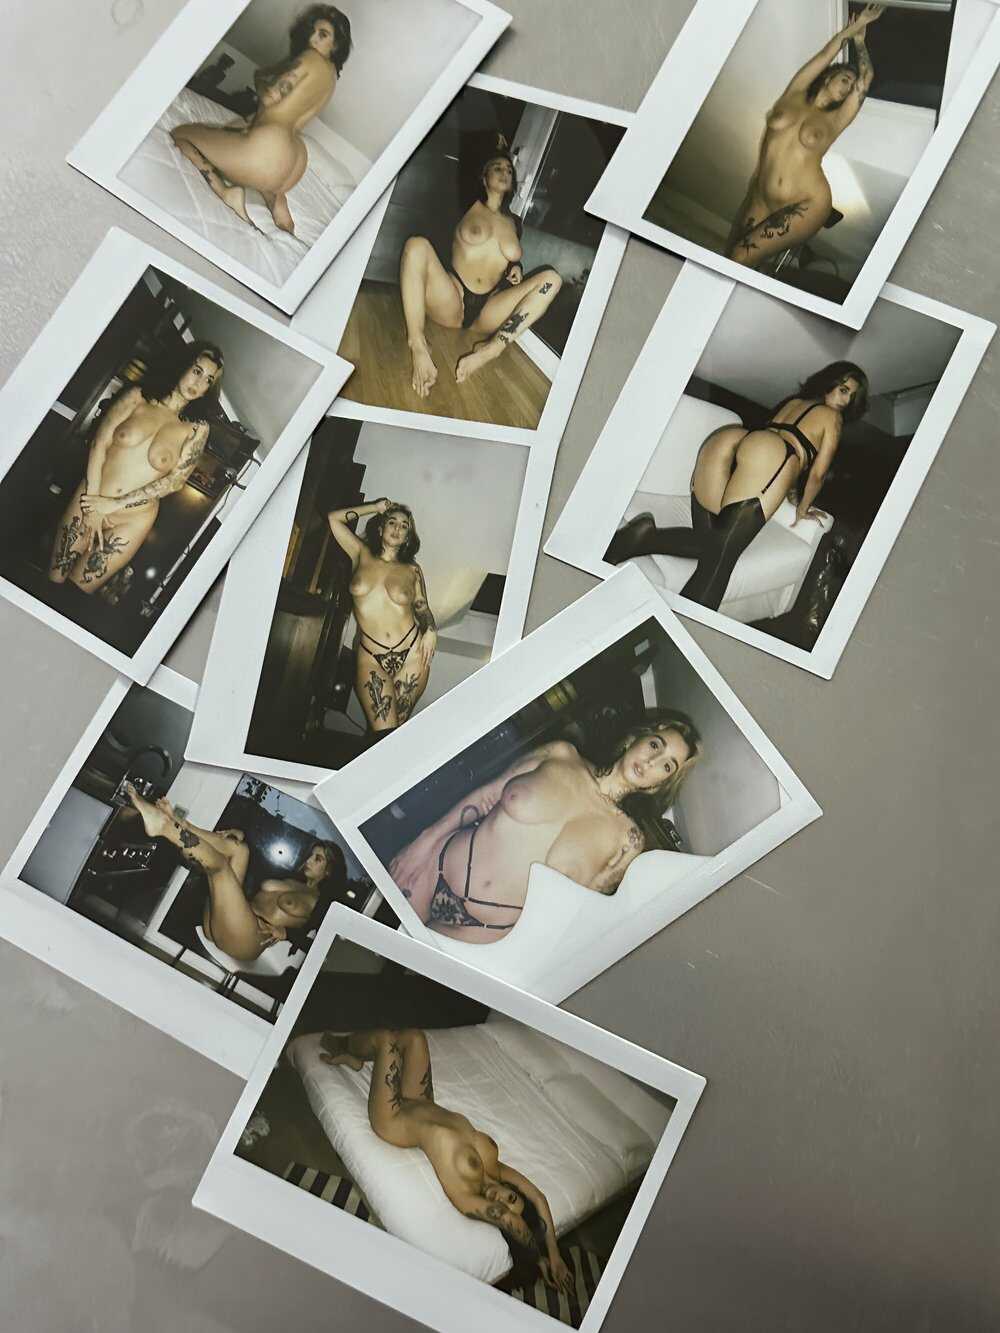 Οι βυζάρες της Eleonaras σε γυμνές φωτογραφίες